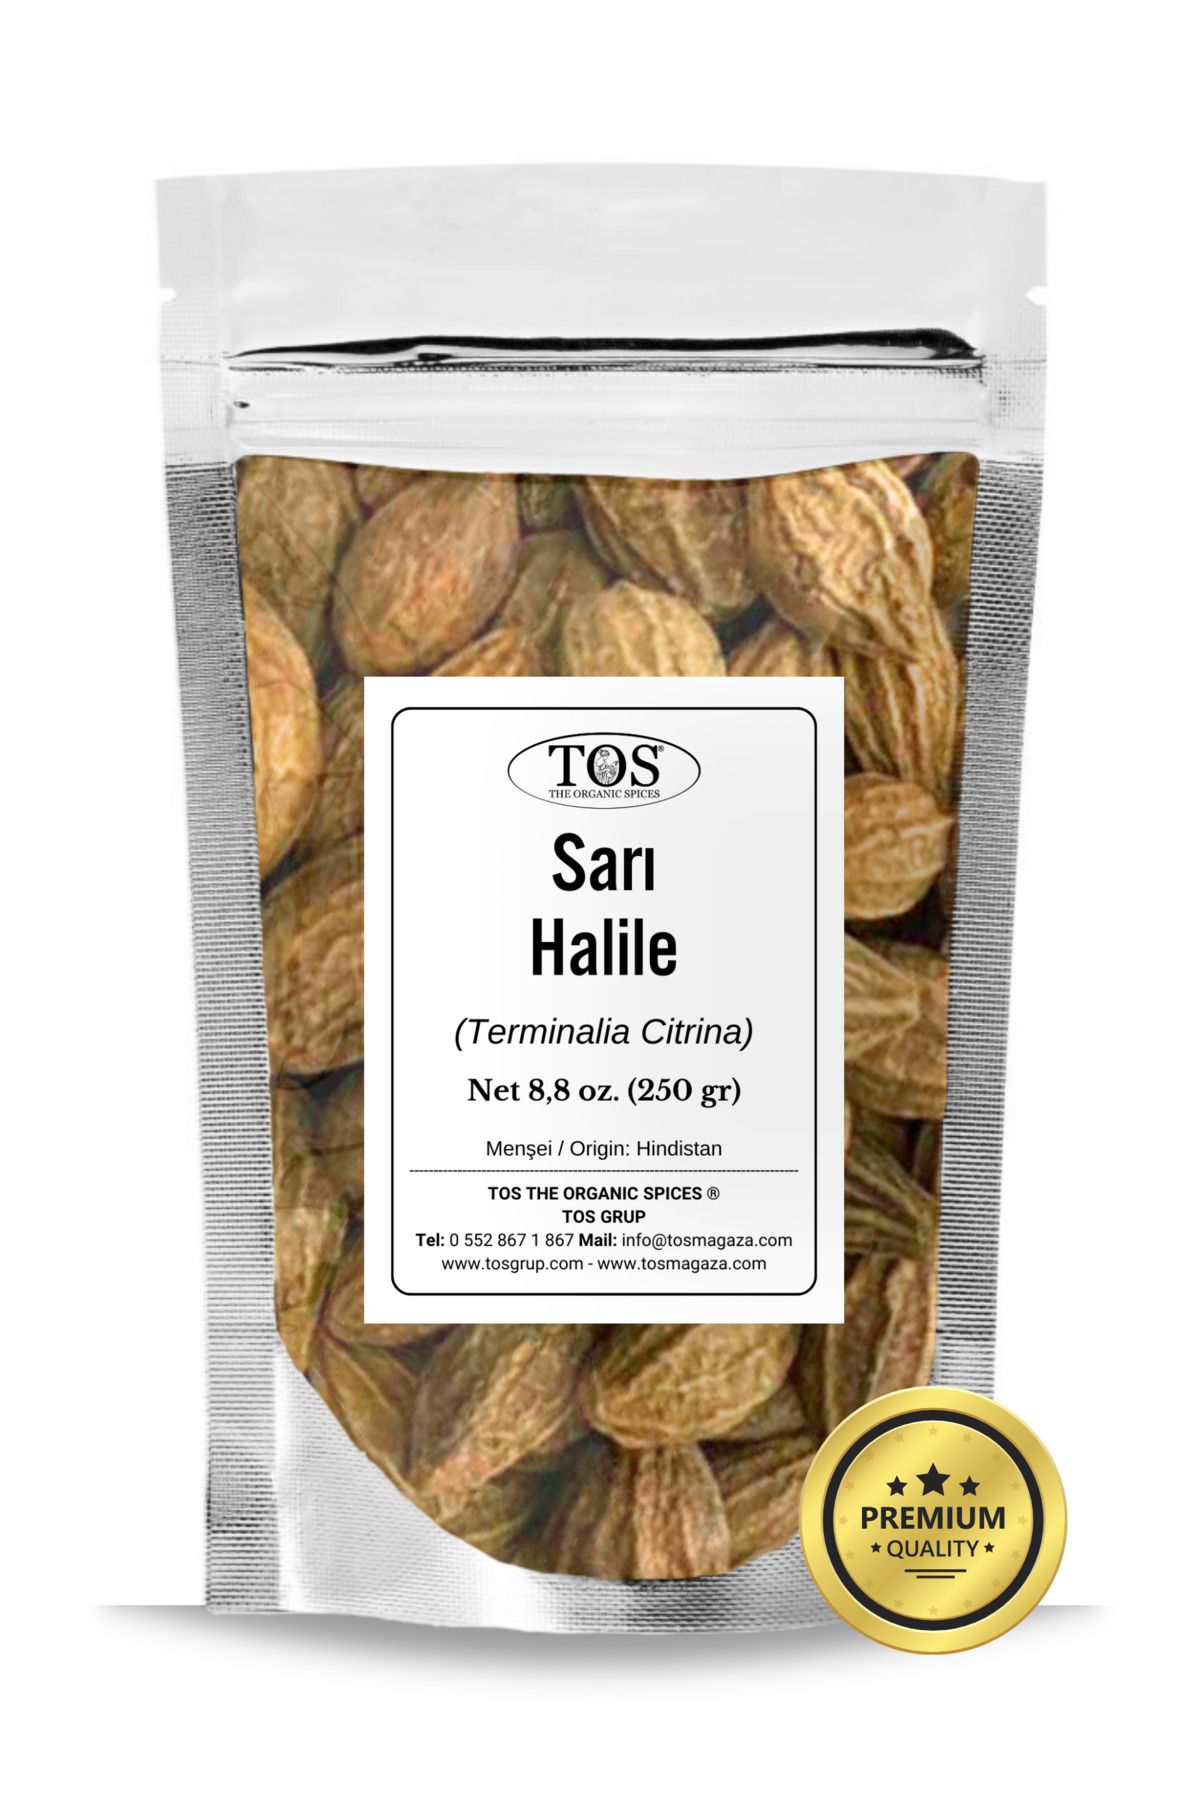 TOS The Organic Spices Sarı Halile 250 gr (1. Kalite) Terminalia Citrina